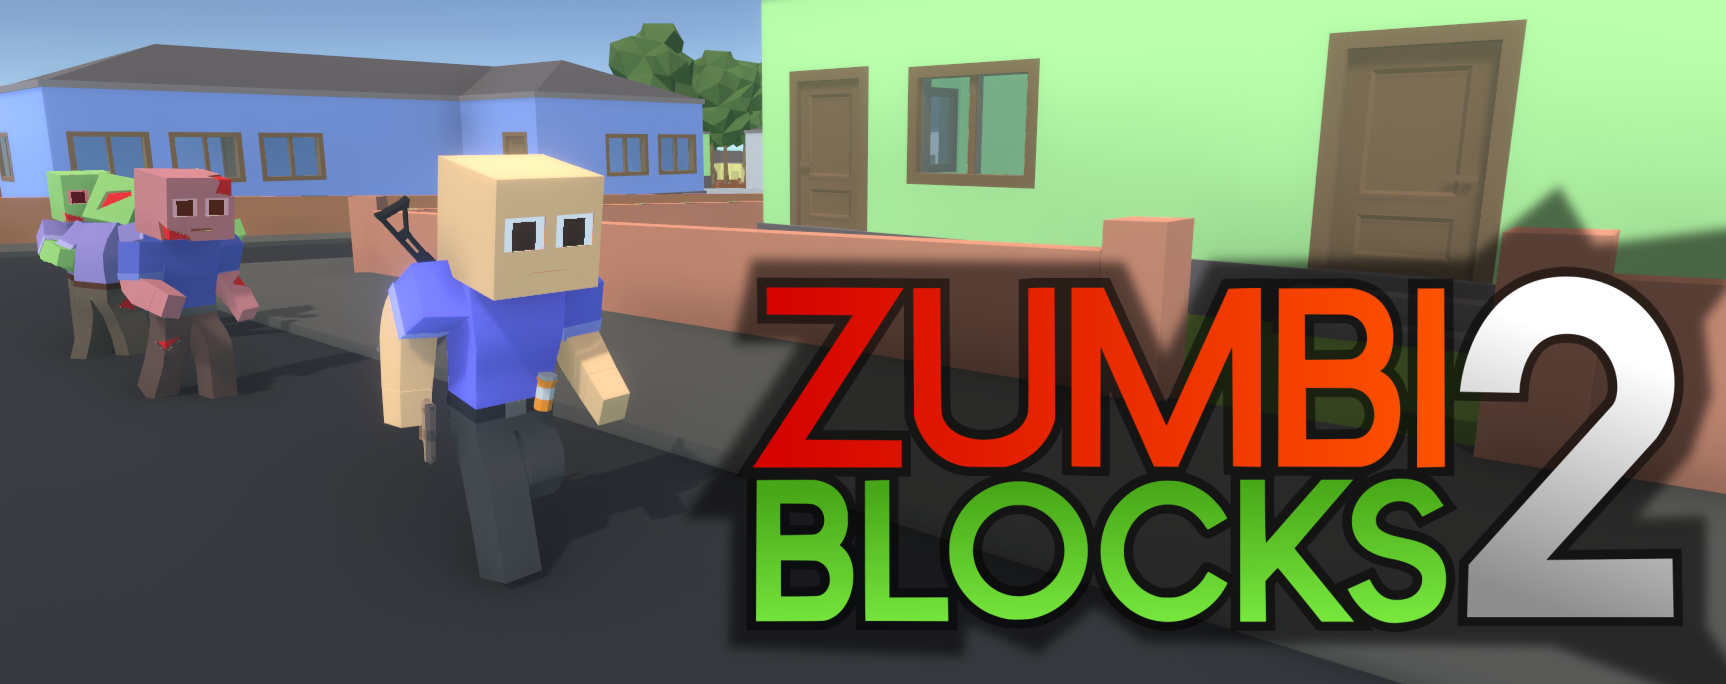 zumbi blocks ultimate 1.0.9 download